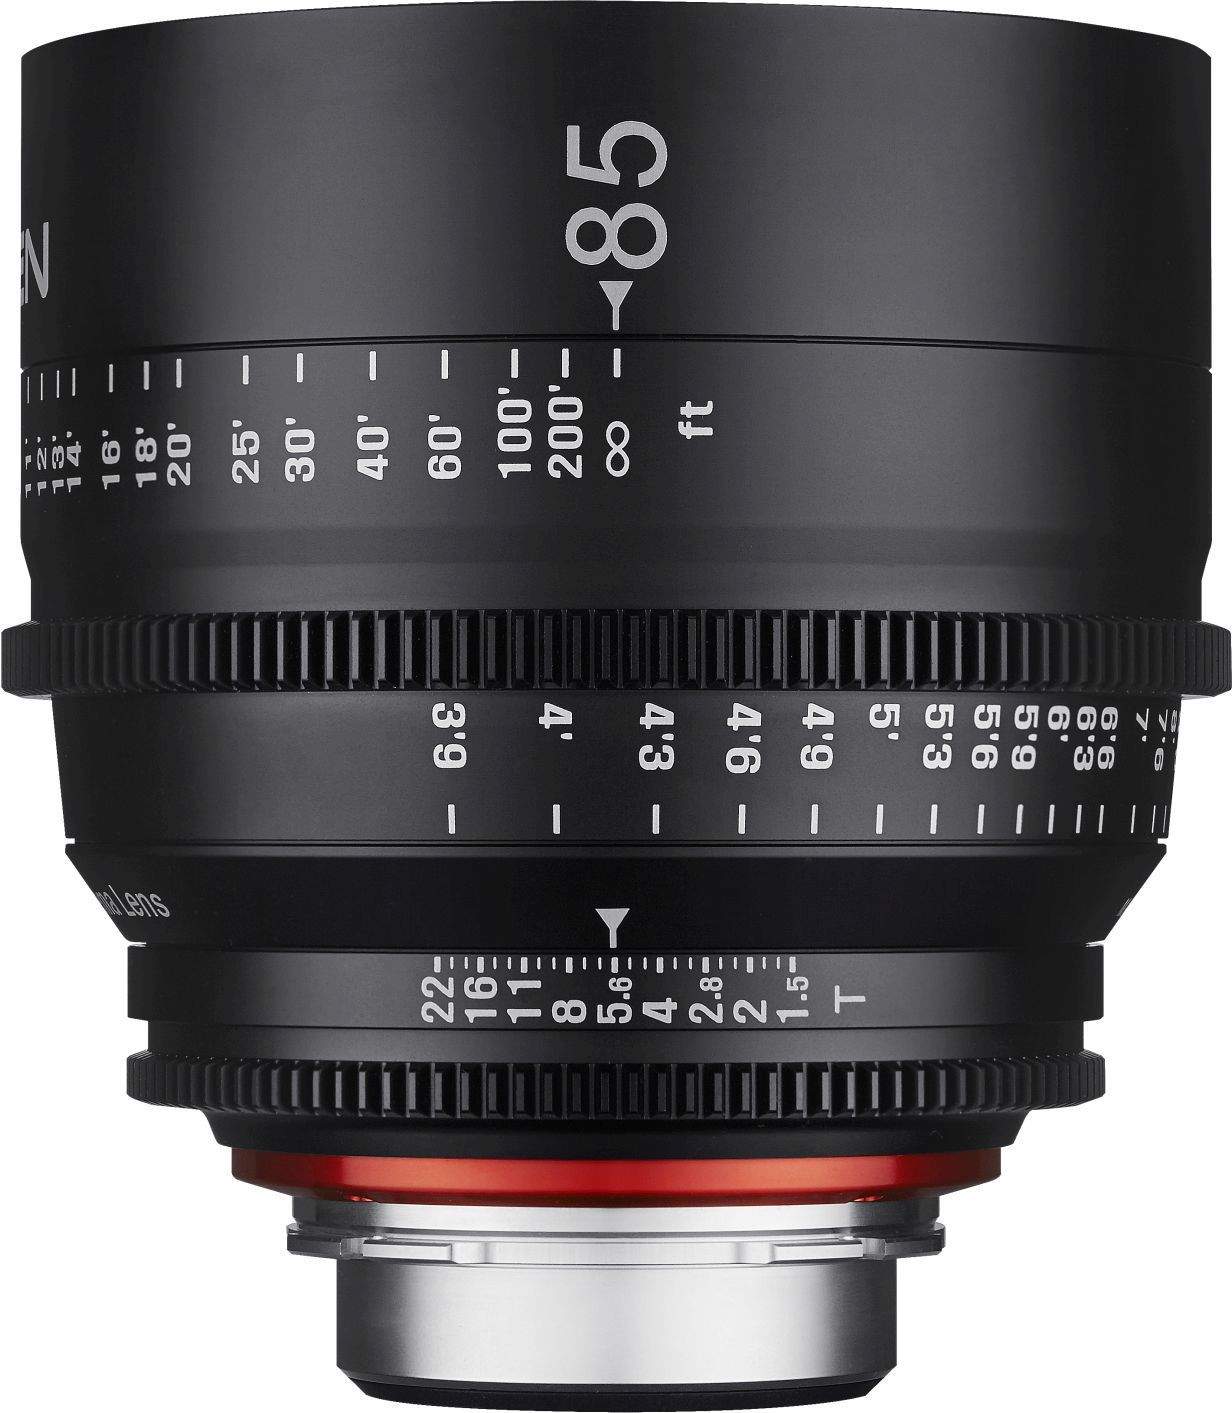 85mm T1.5 XEEN Canon EF Full Frame Cinema Lens